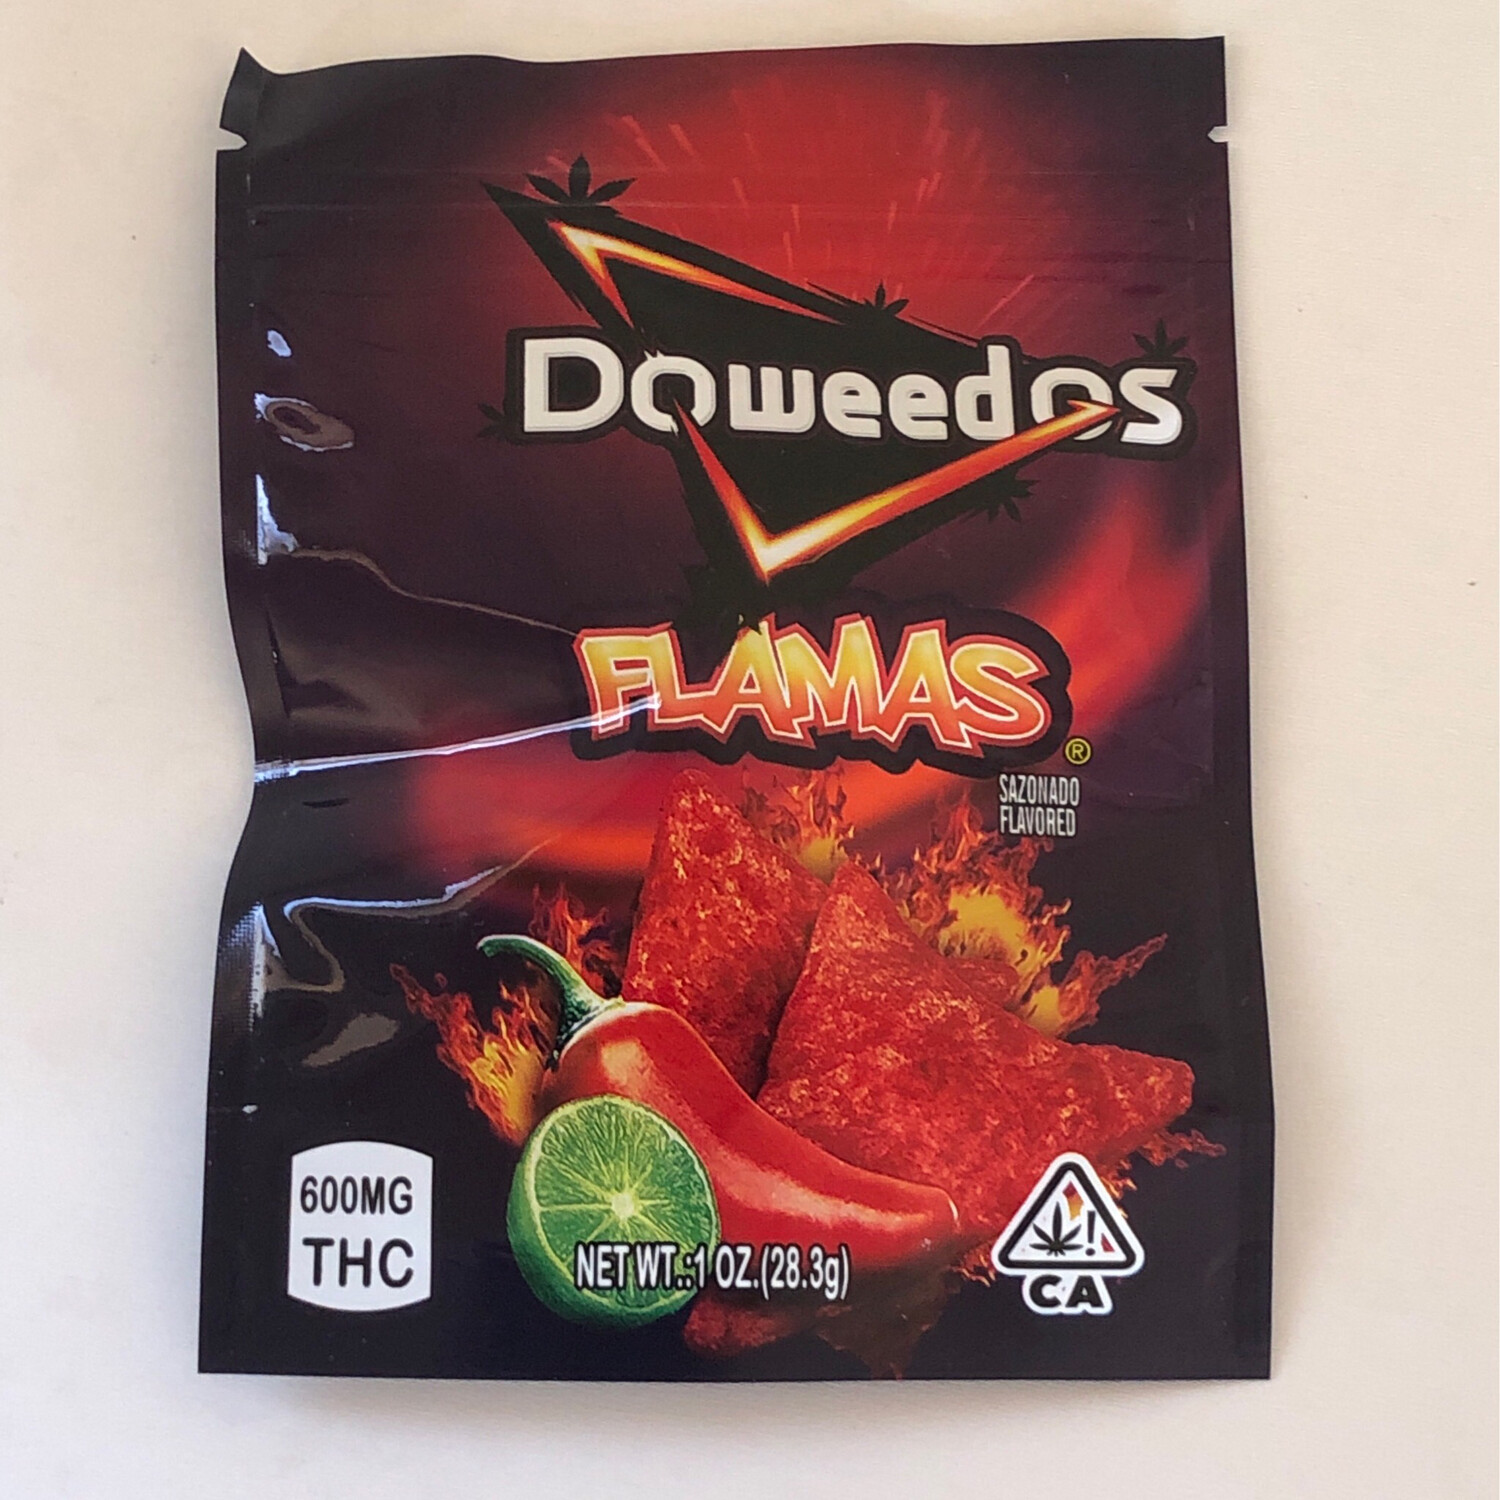 DoWeedos Flamas Sazonado Flavor 600mg